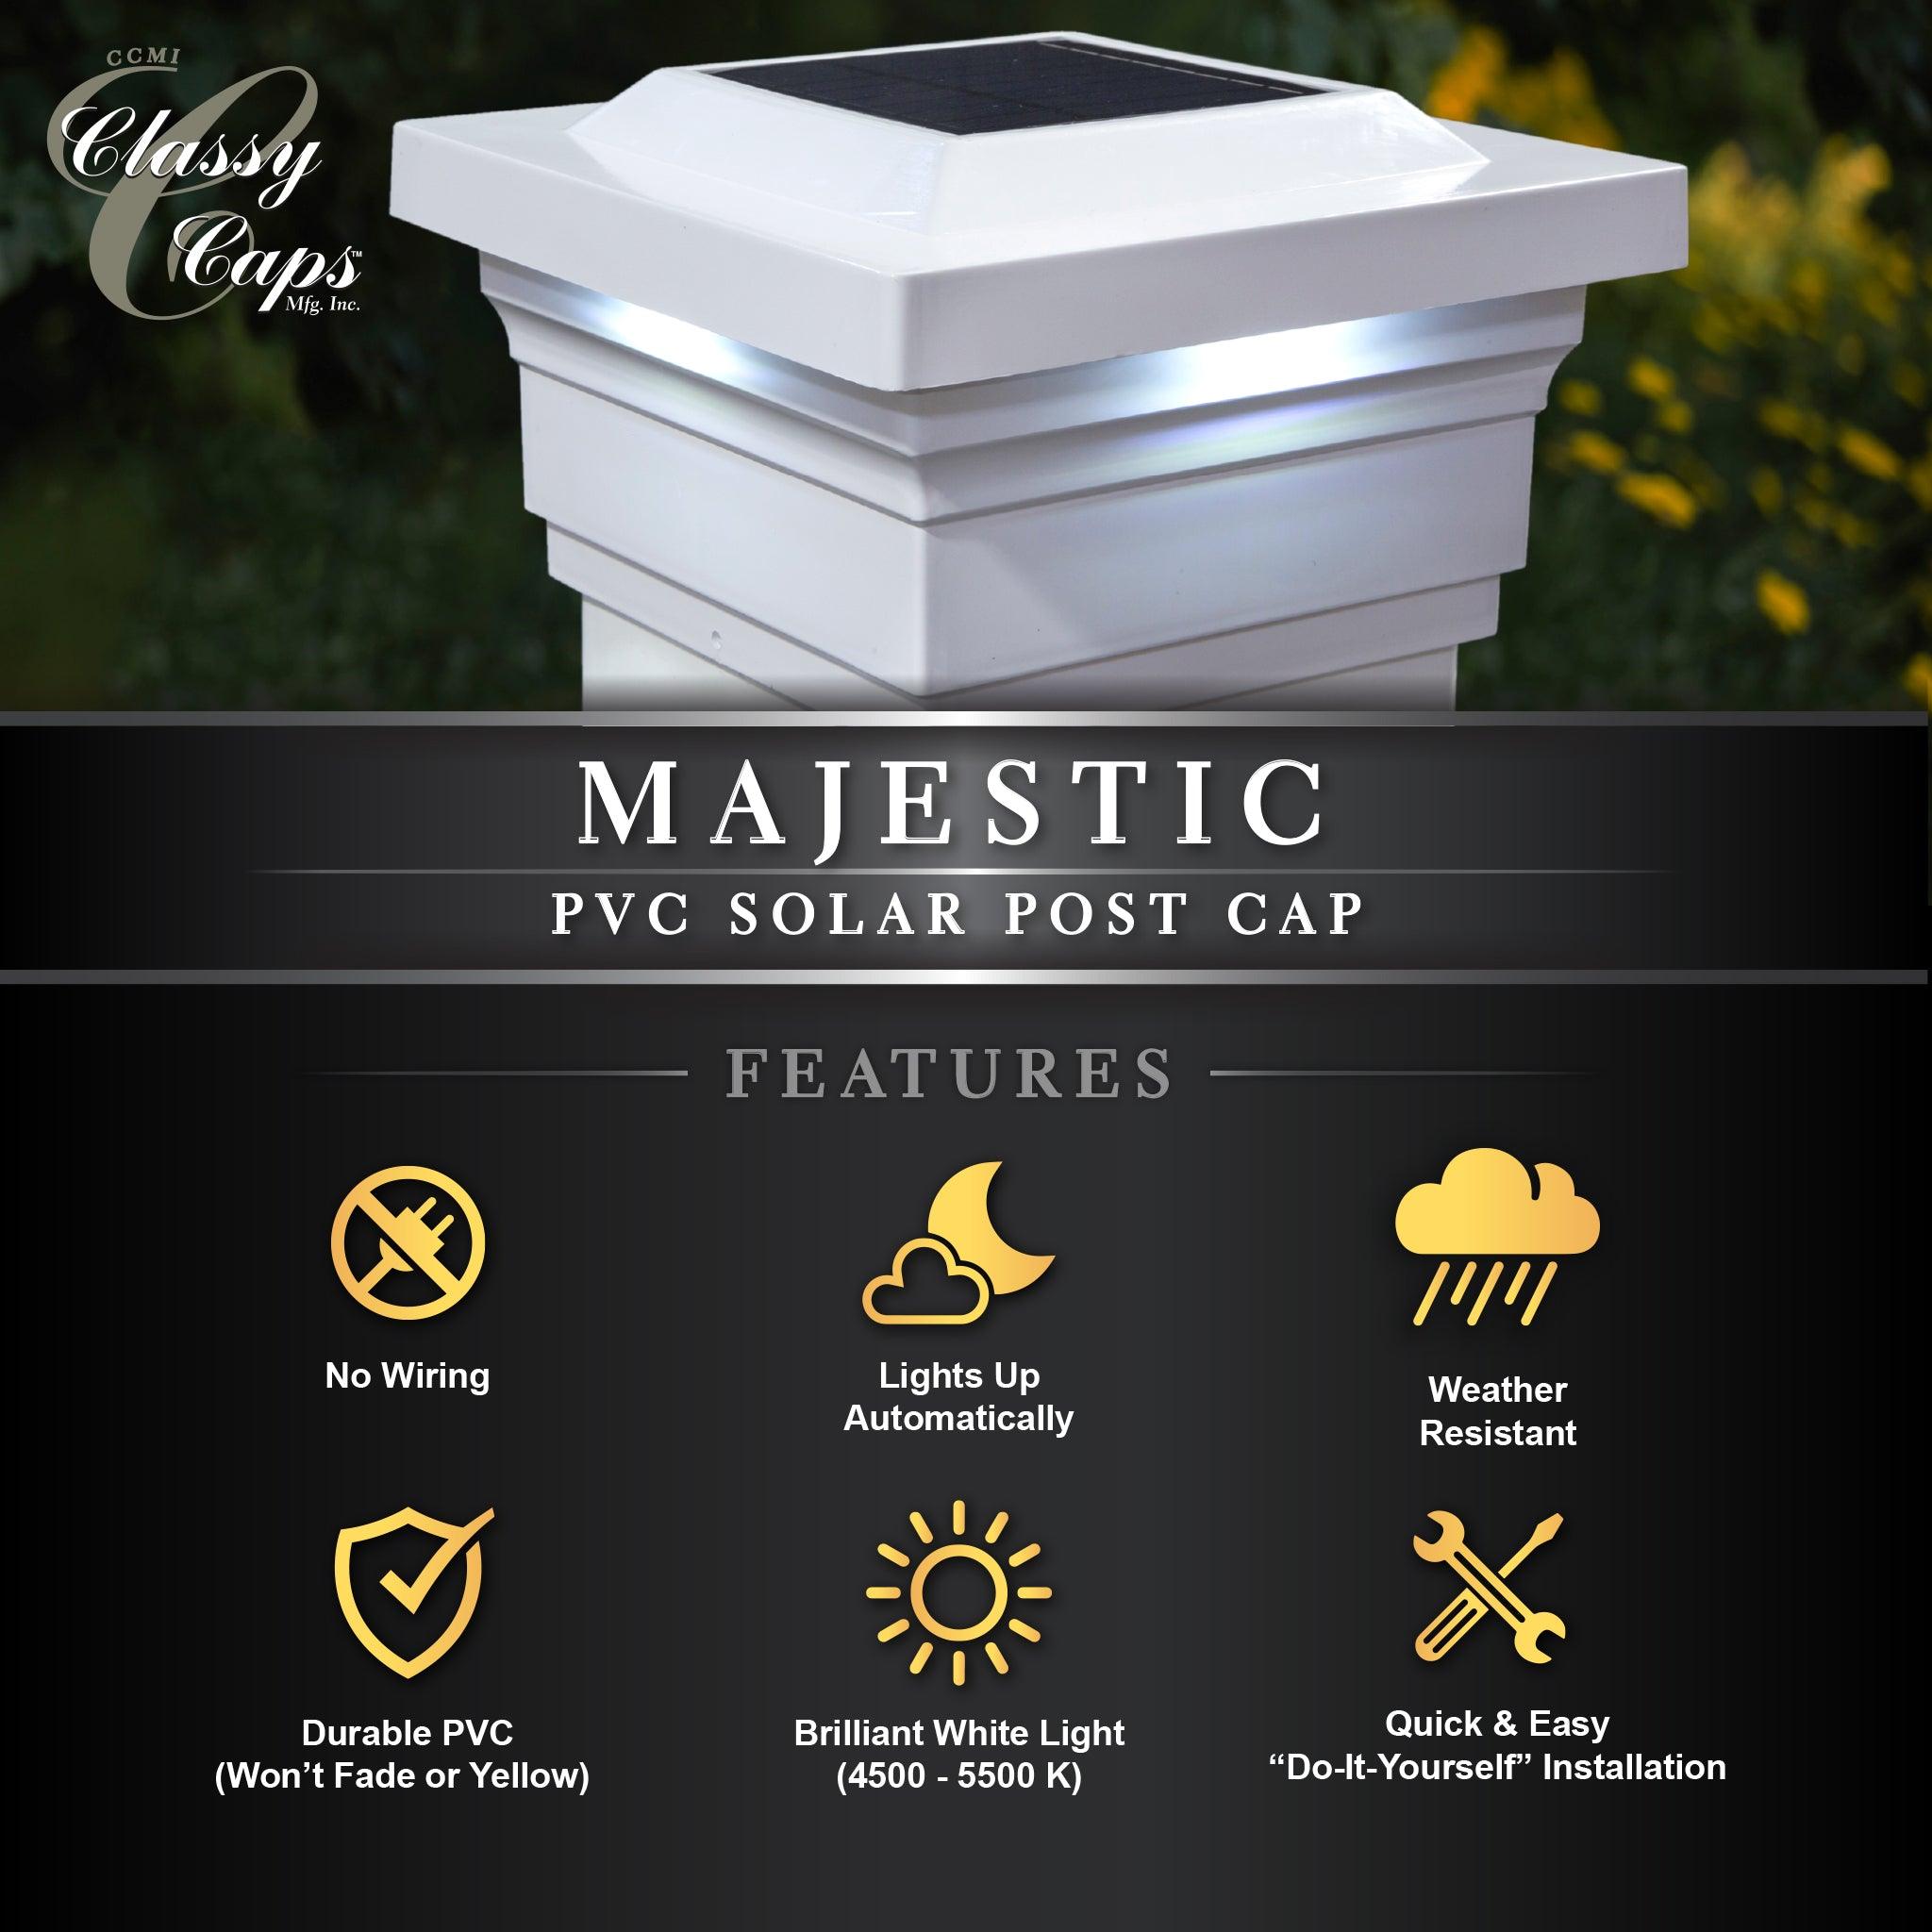 Majestic Solar Post Cap - White - Classy Caps Mfg. Inc.